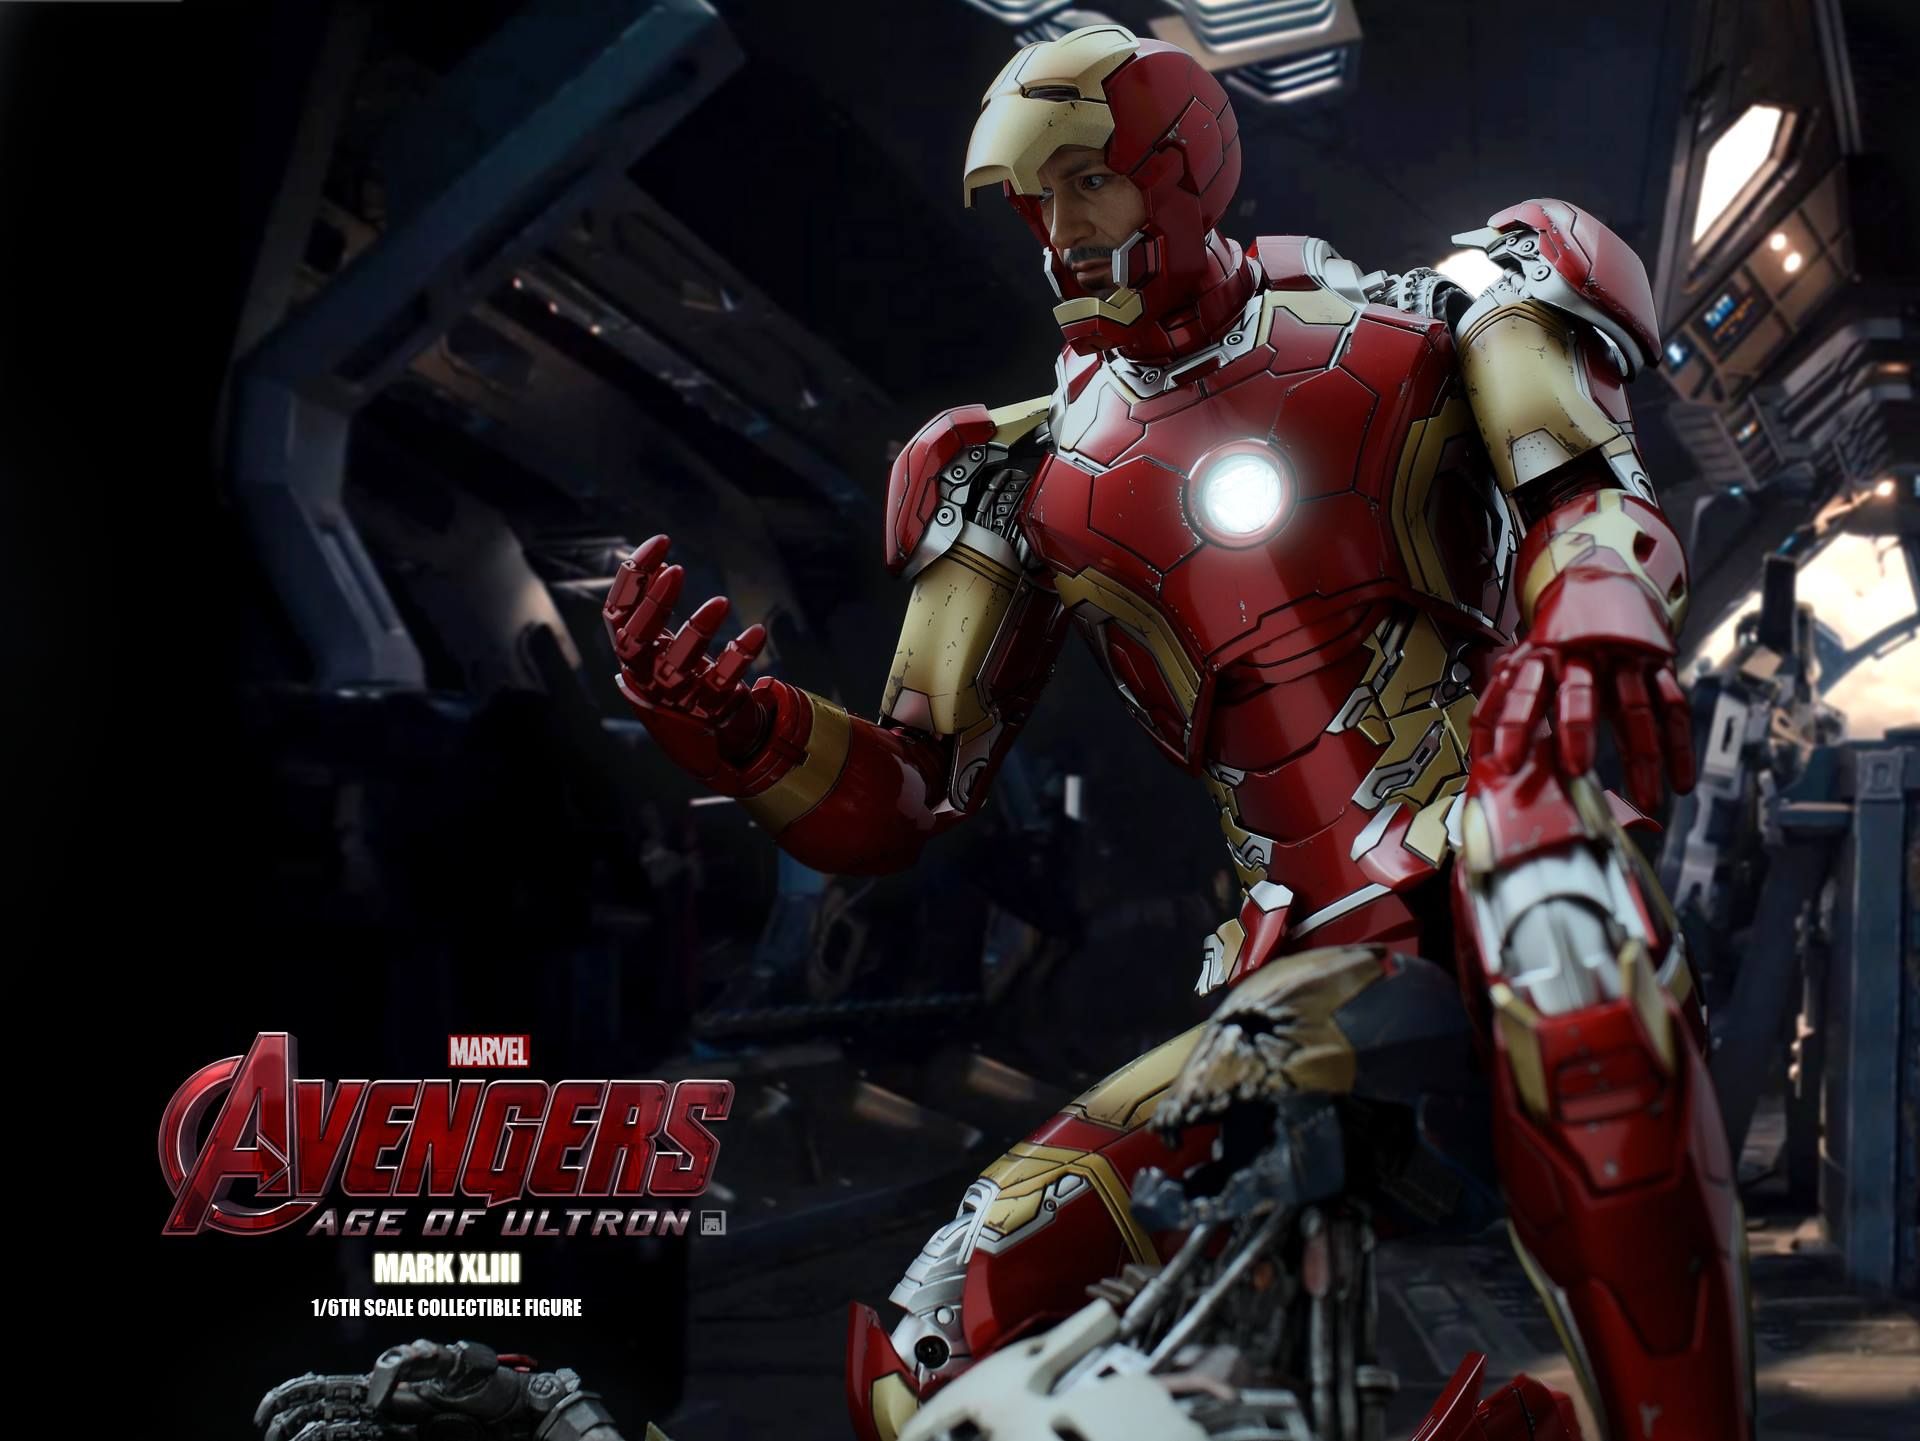 Avengers 2 Iron Man Mark XLIII Action Figure Photo 9